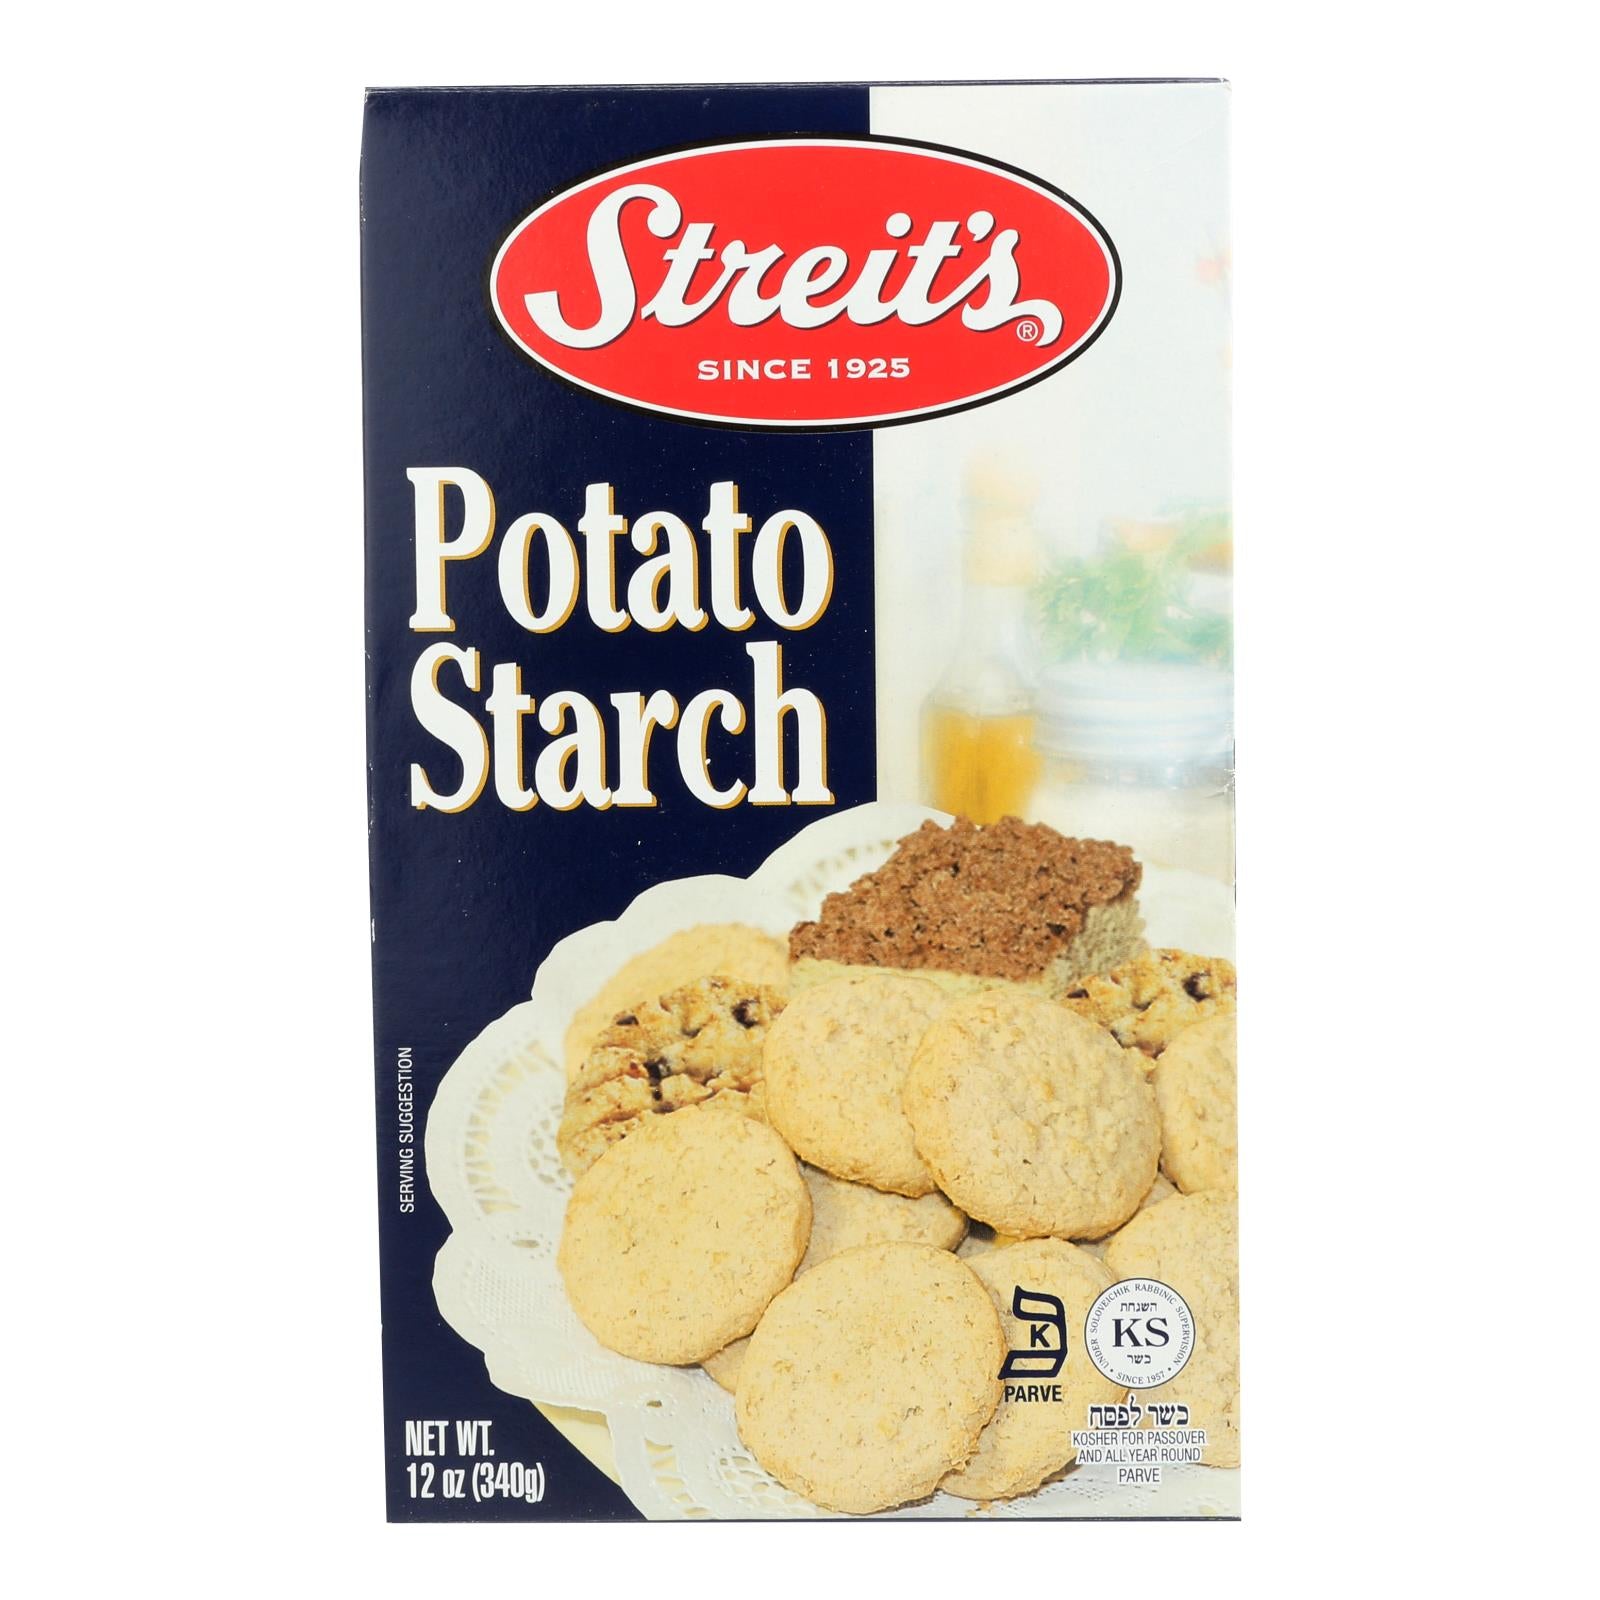 Streit's - Potato Starch - Case of 12 - 12 OZ